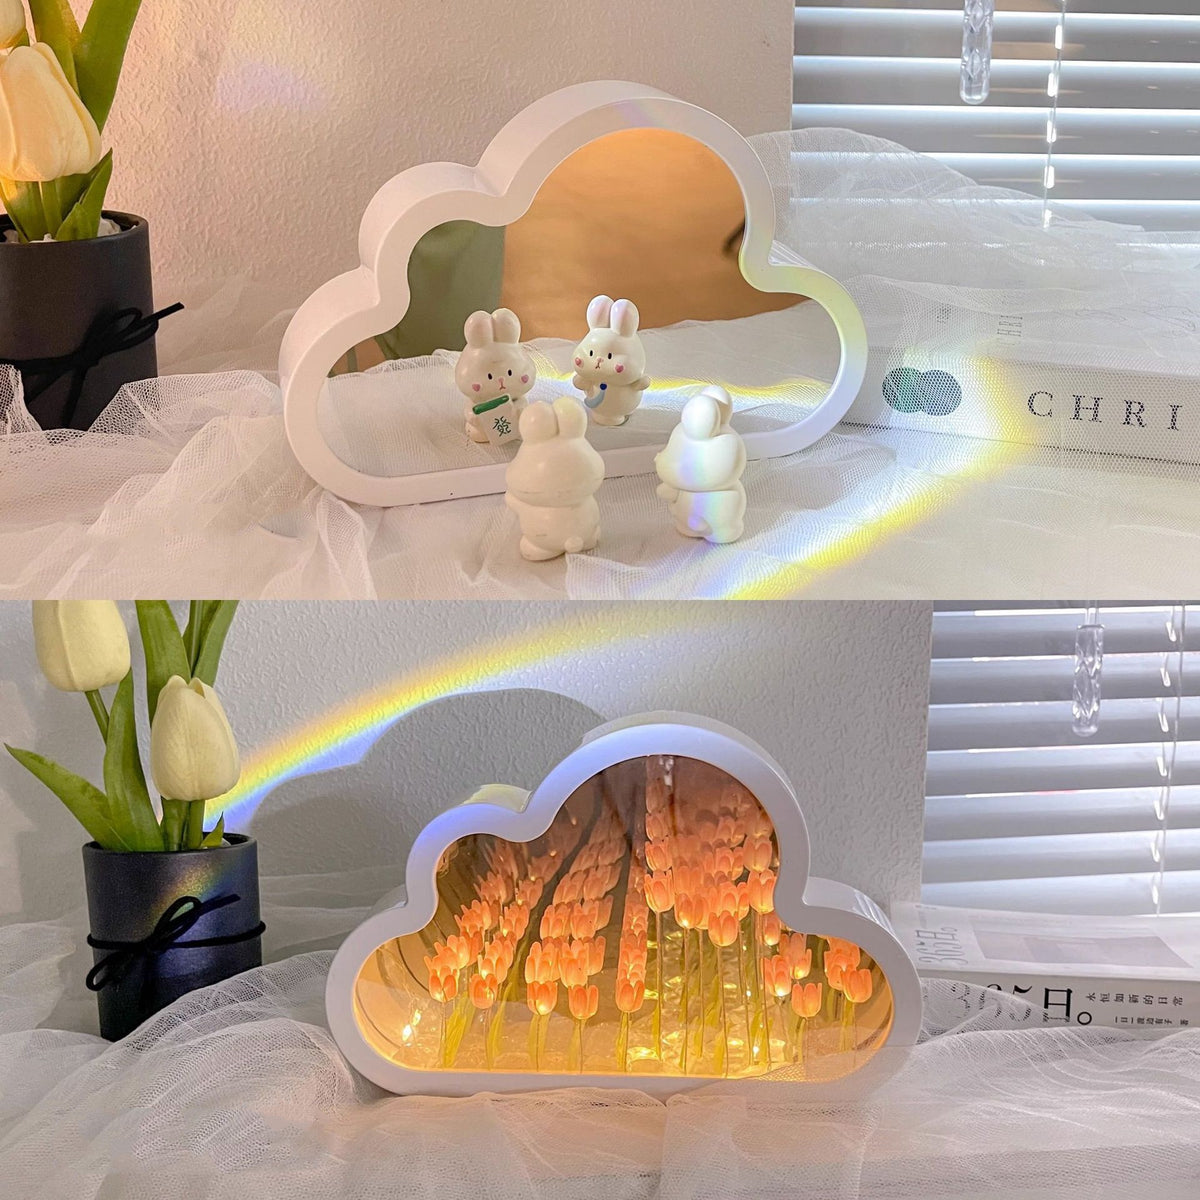 Tulip Cloud Night Lamp DIY Material